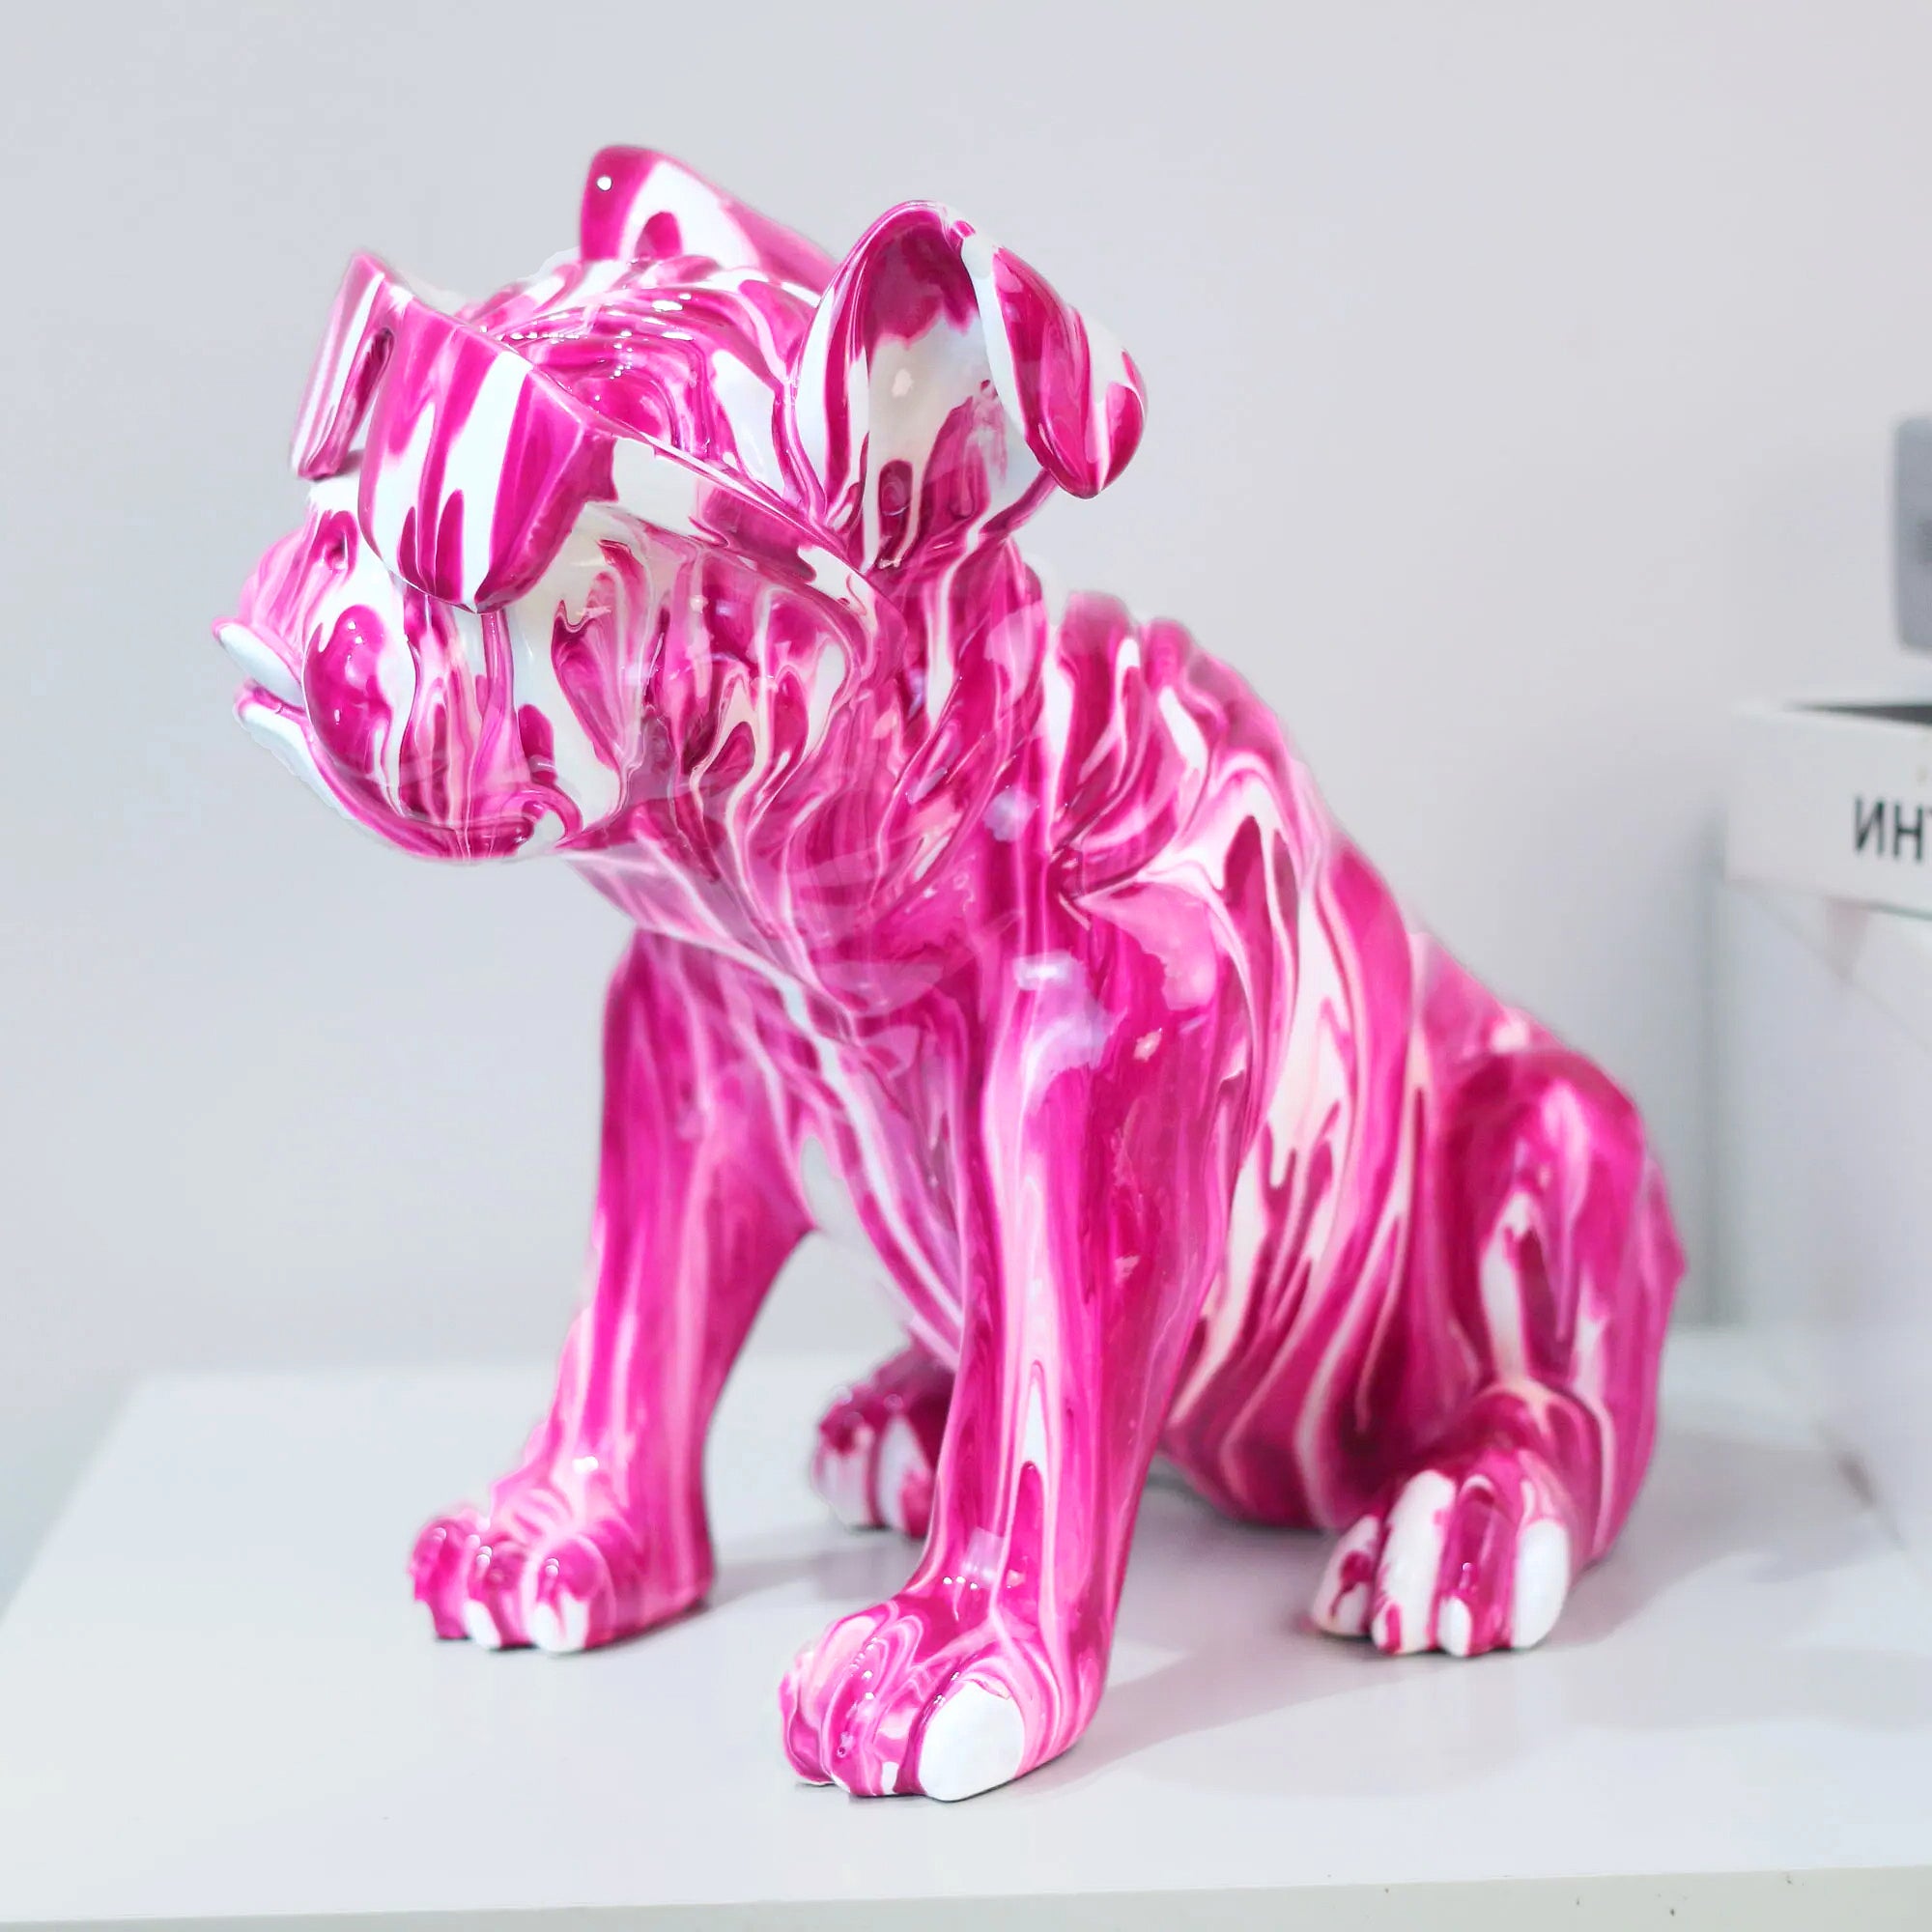 Flamboyant Bulldog Statue